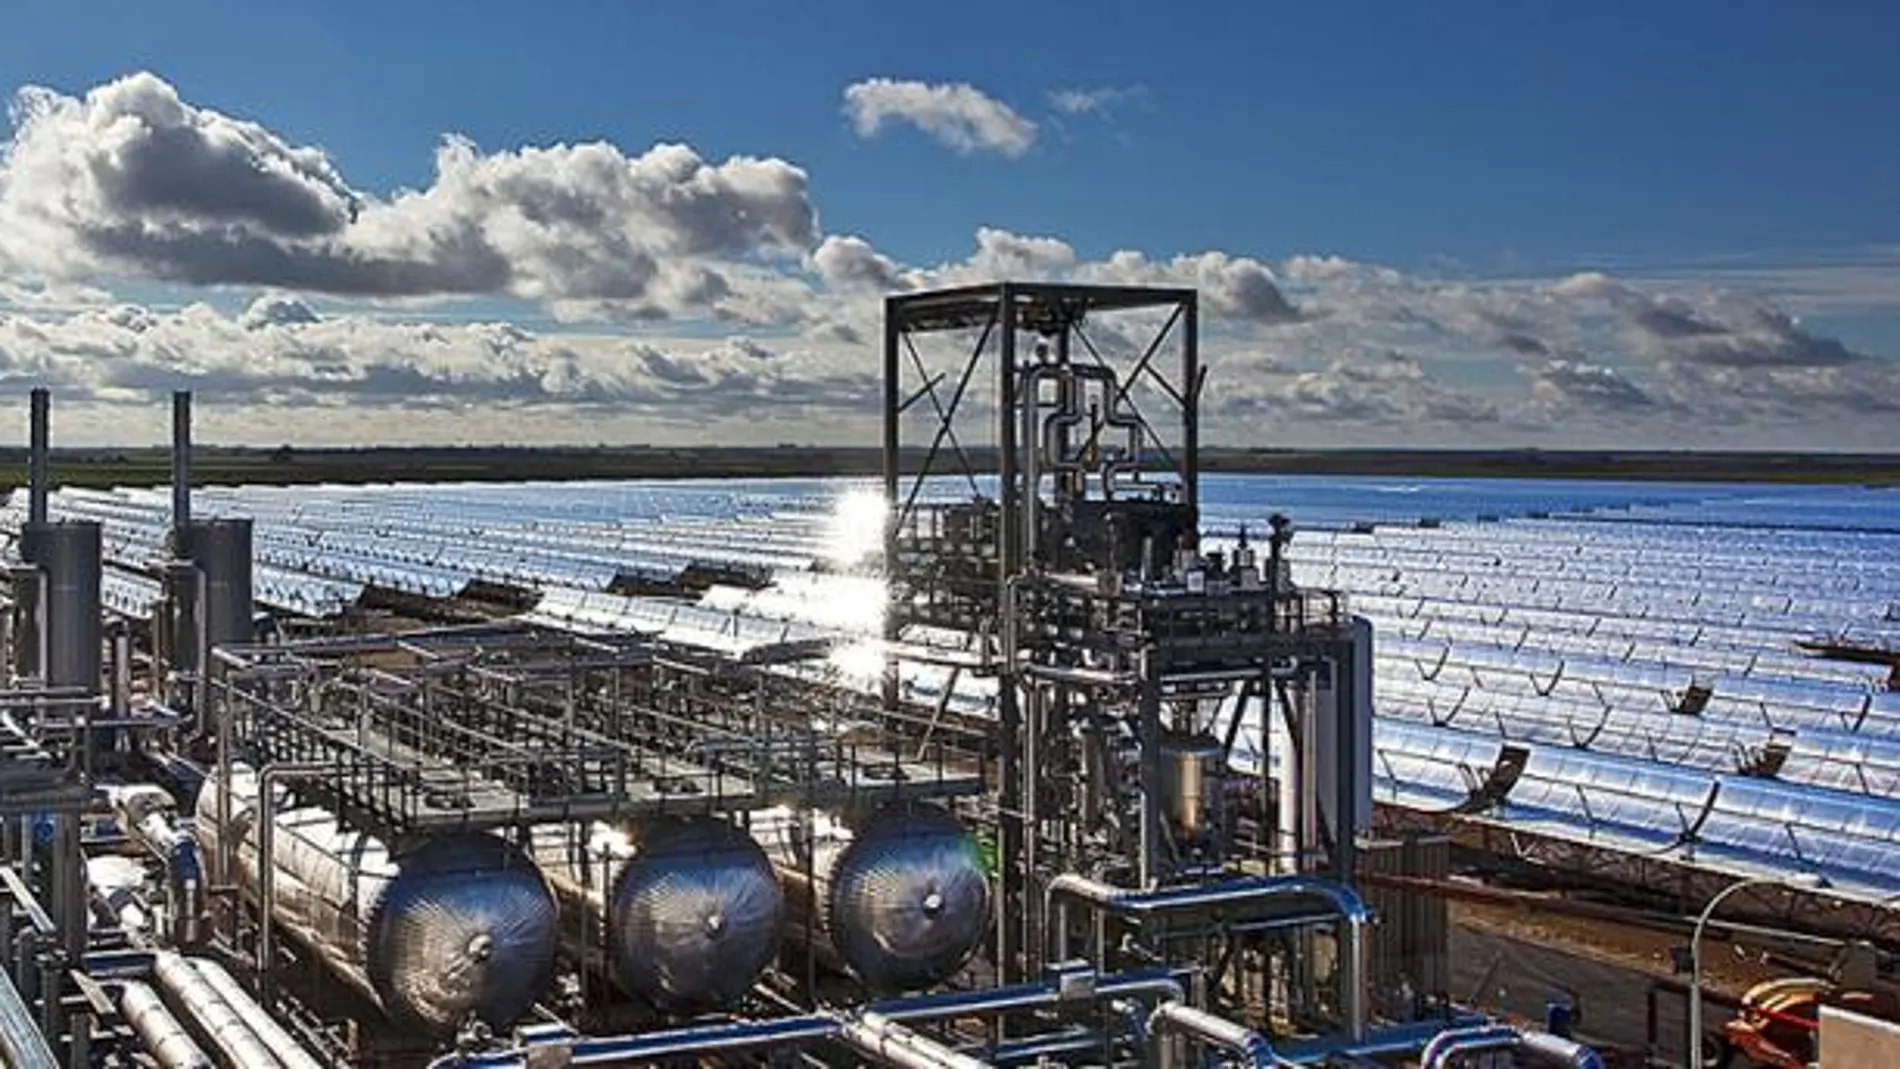 En materia termosolar, además de las cinco plantas de España, cuenta con una en el Desierto de Nevada, en Estados Unidos, de 64 MW de potencia.